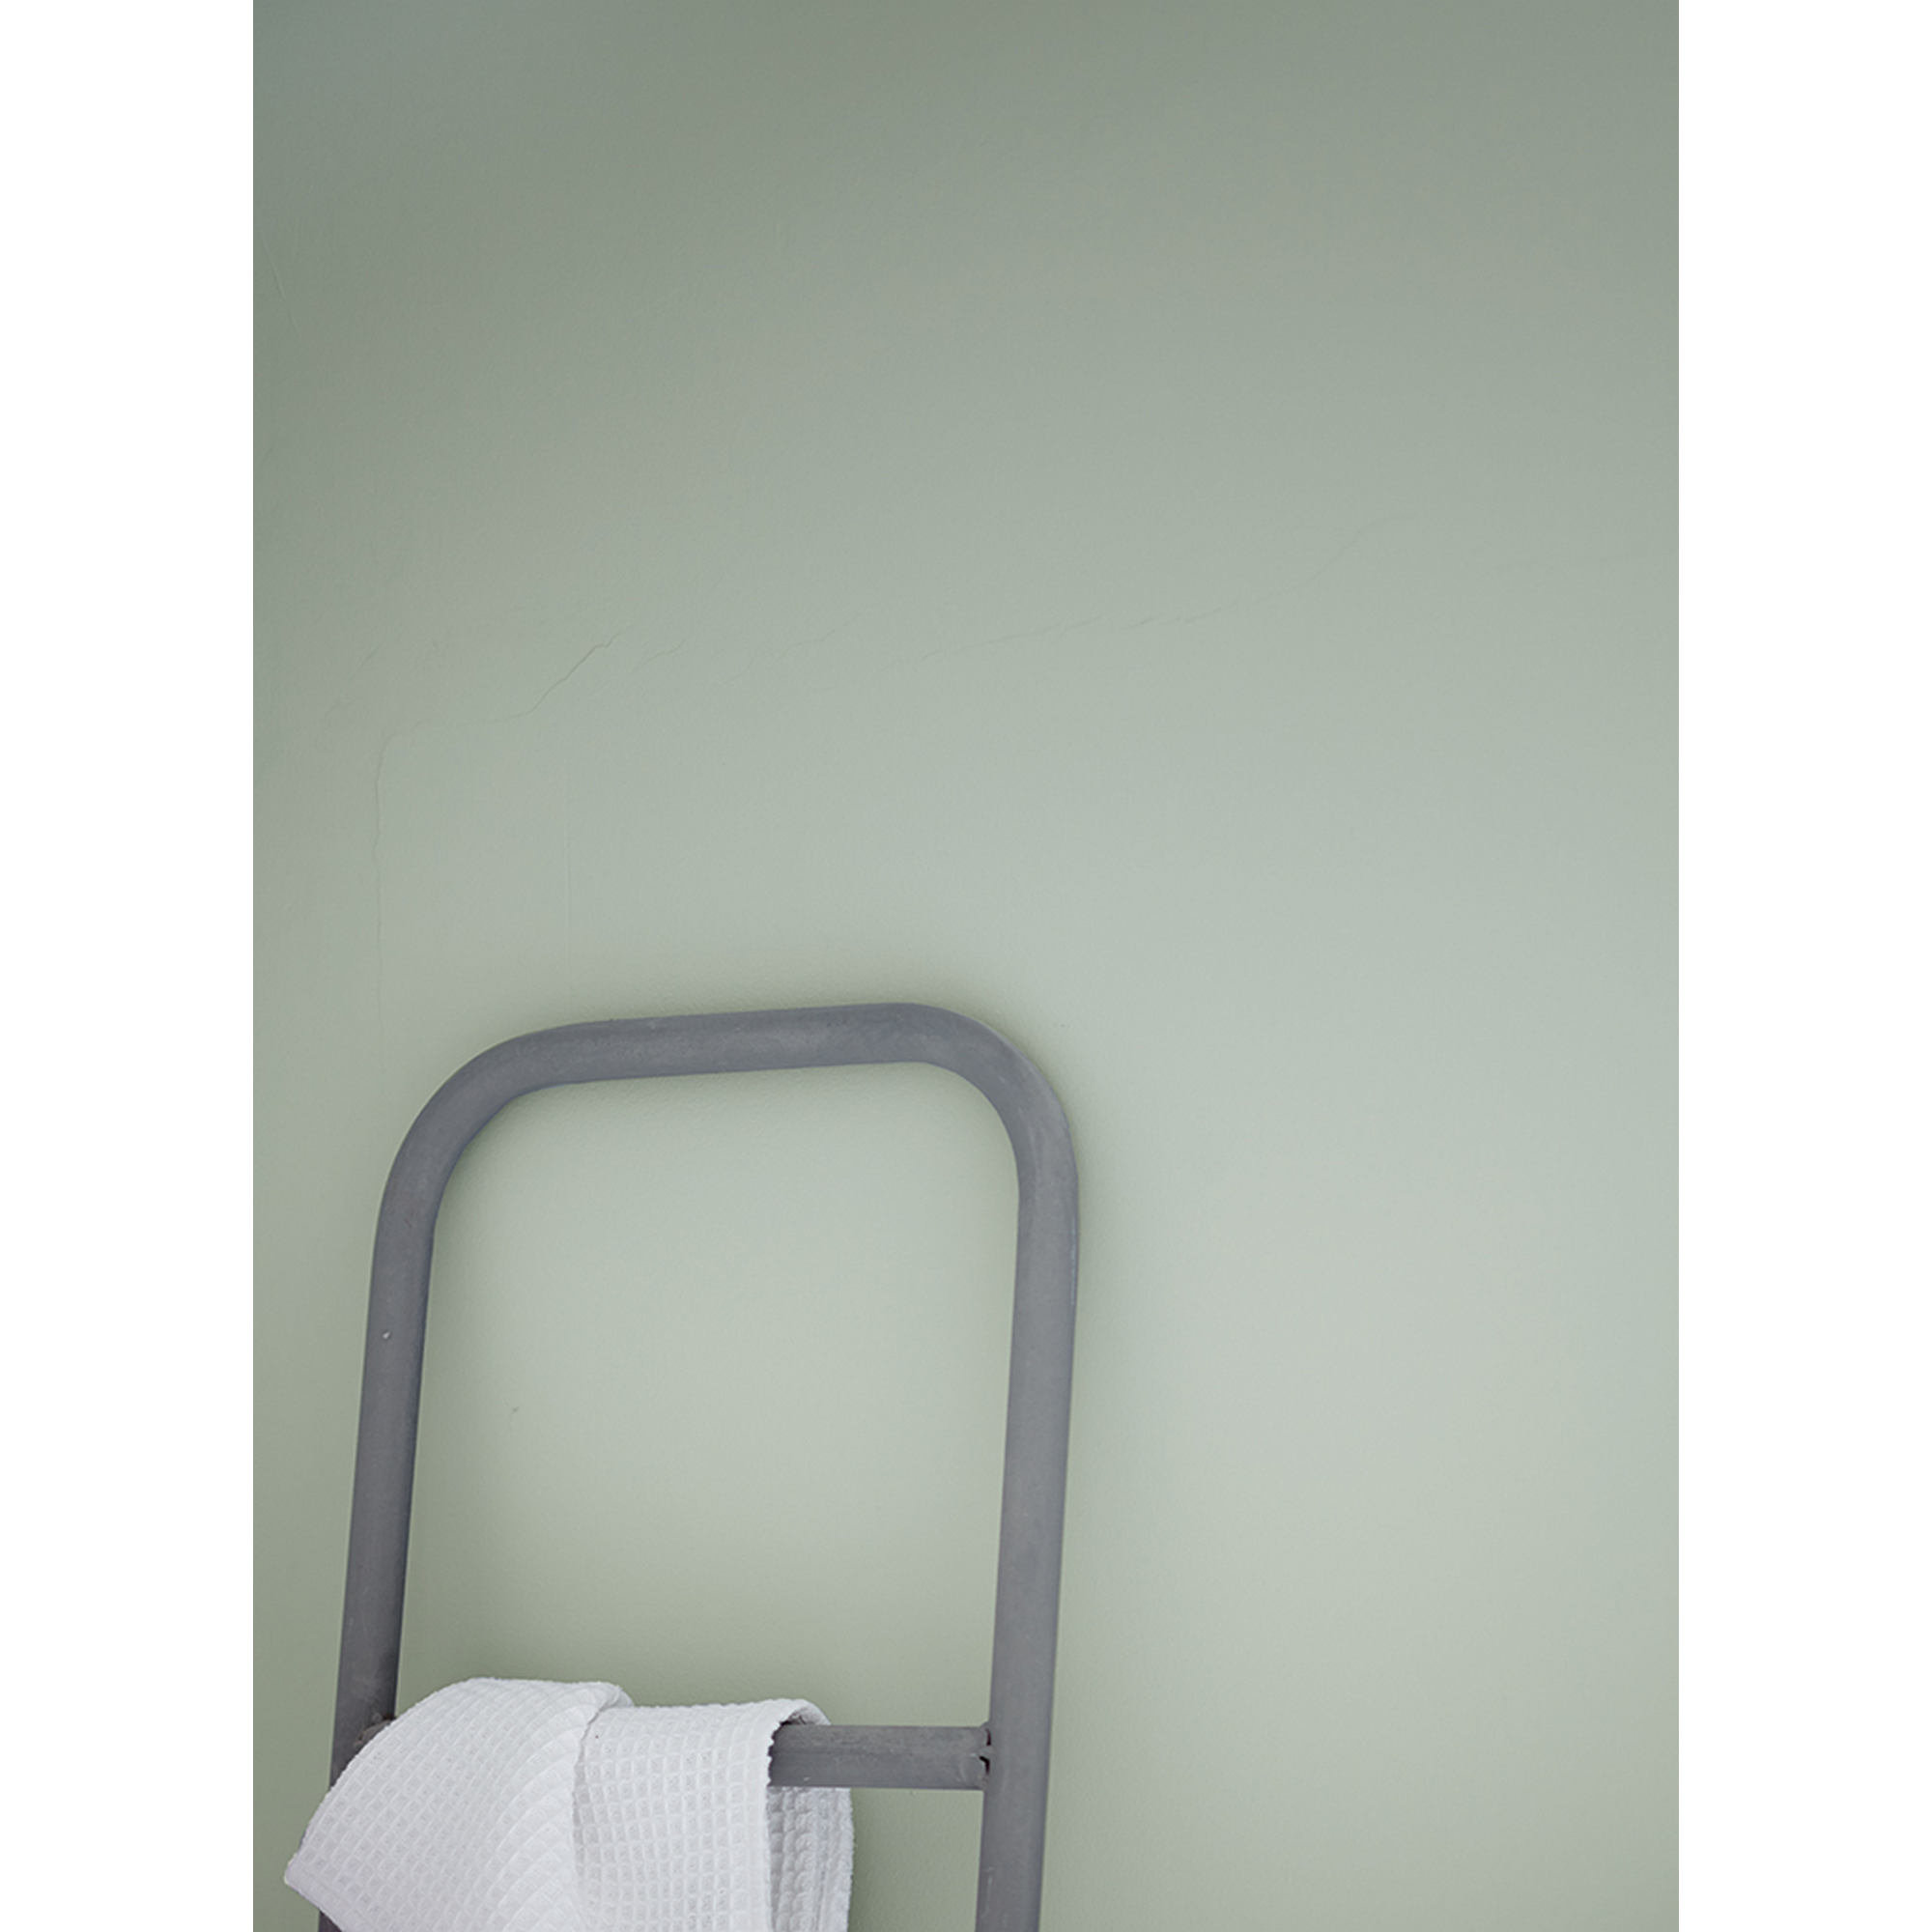 Feine Farben 'Sanfter Morgentau' graugrün matt 2,5 l + product picture